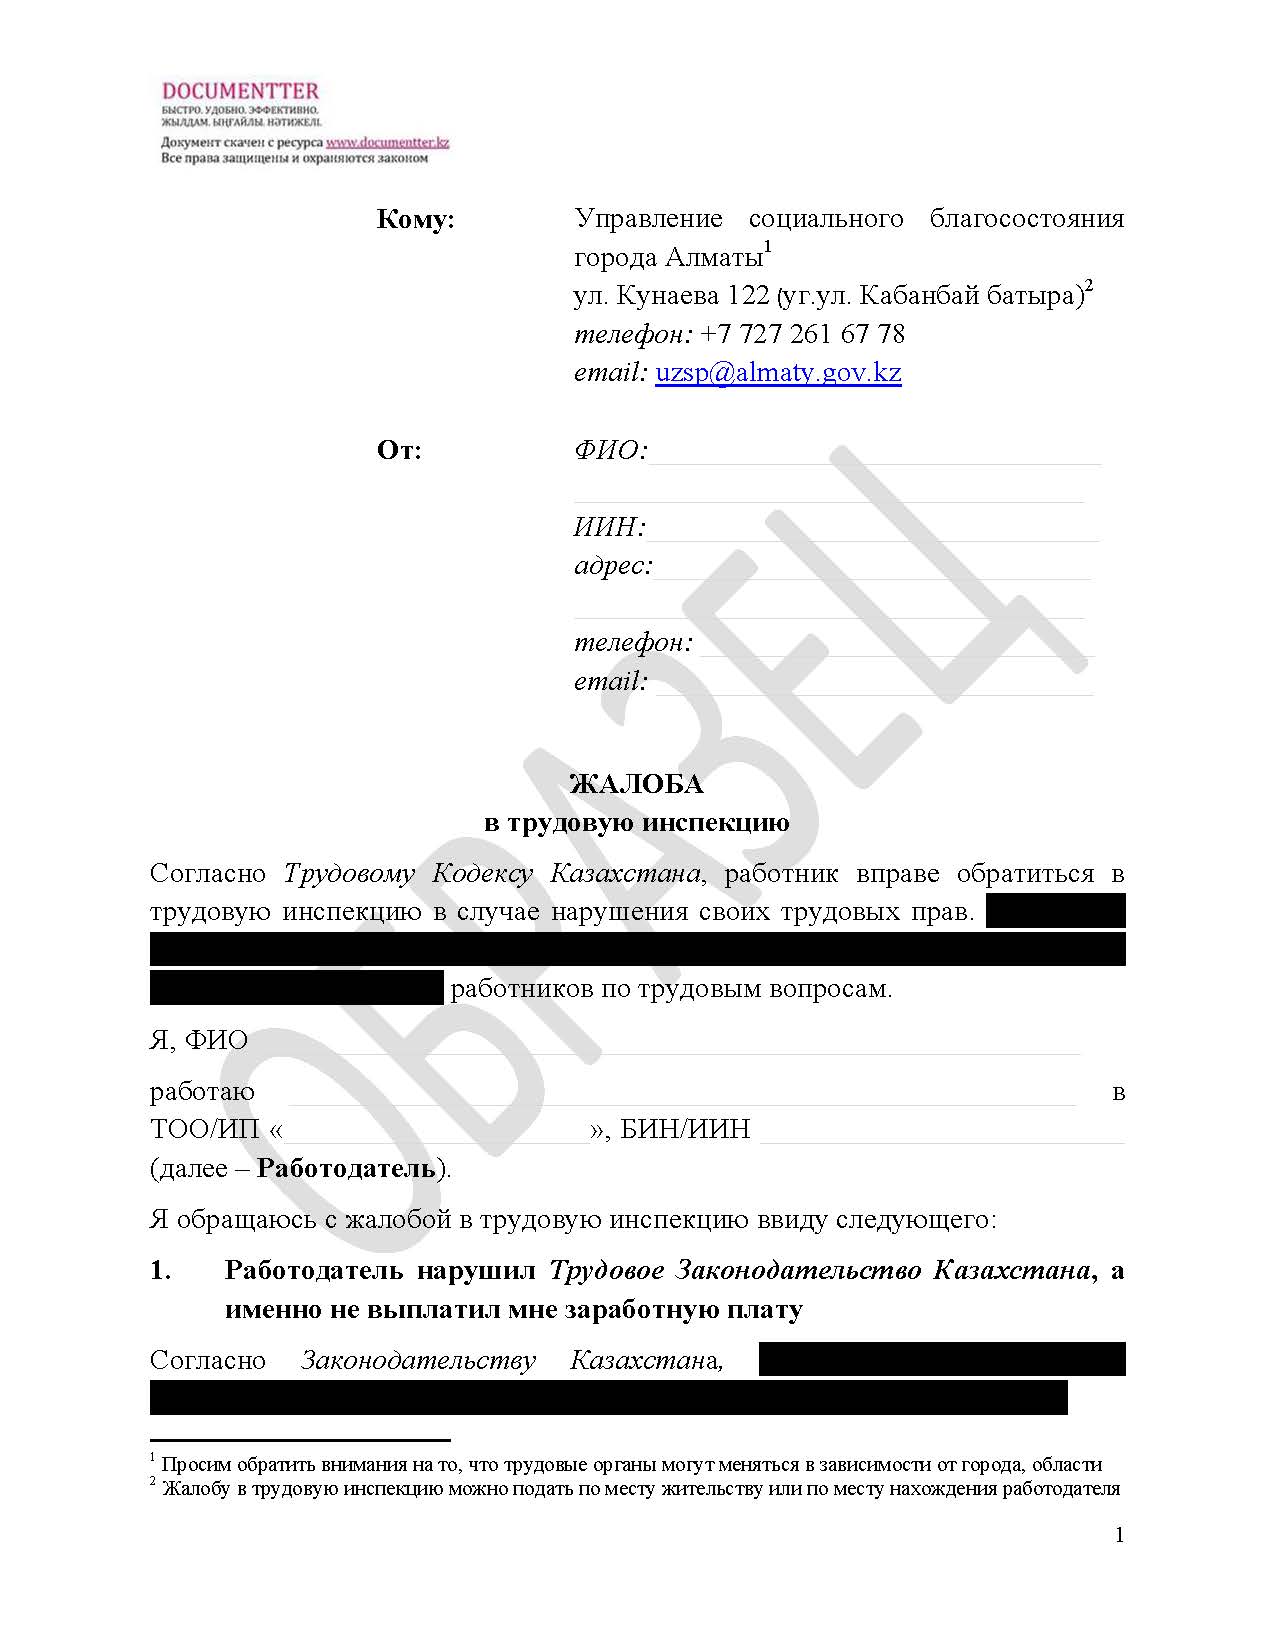 Пакет документов, если не выплатили зарплату | documentterkz.com в Казахстане